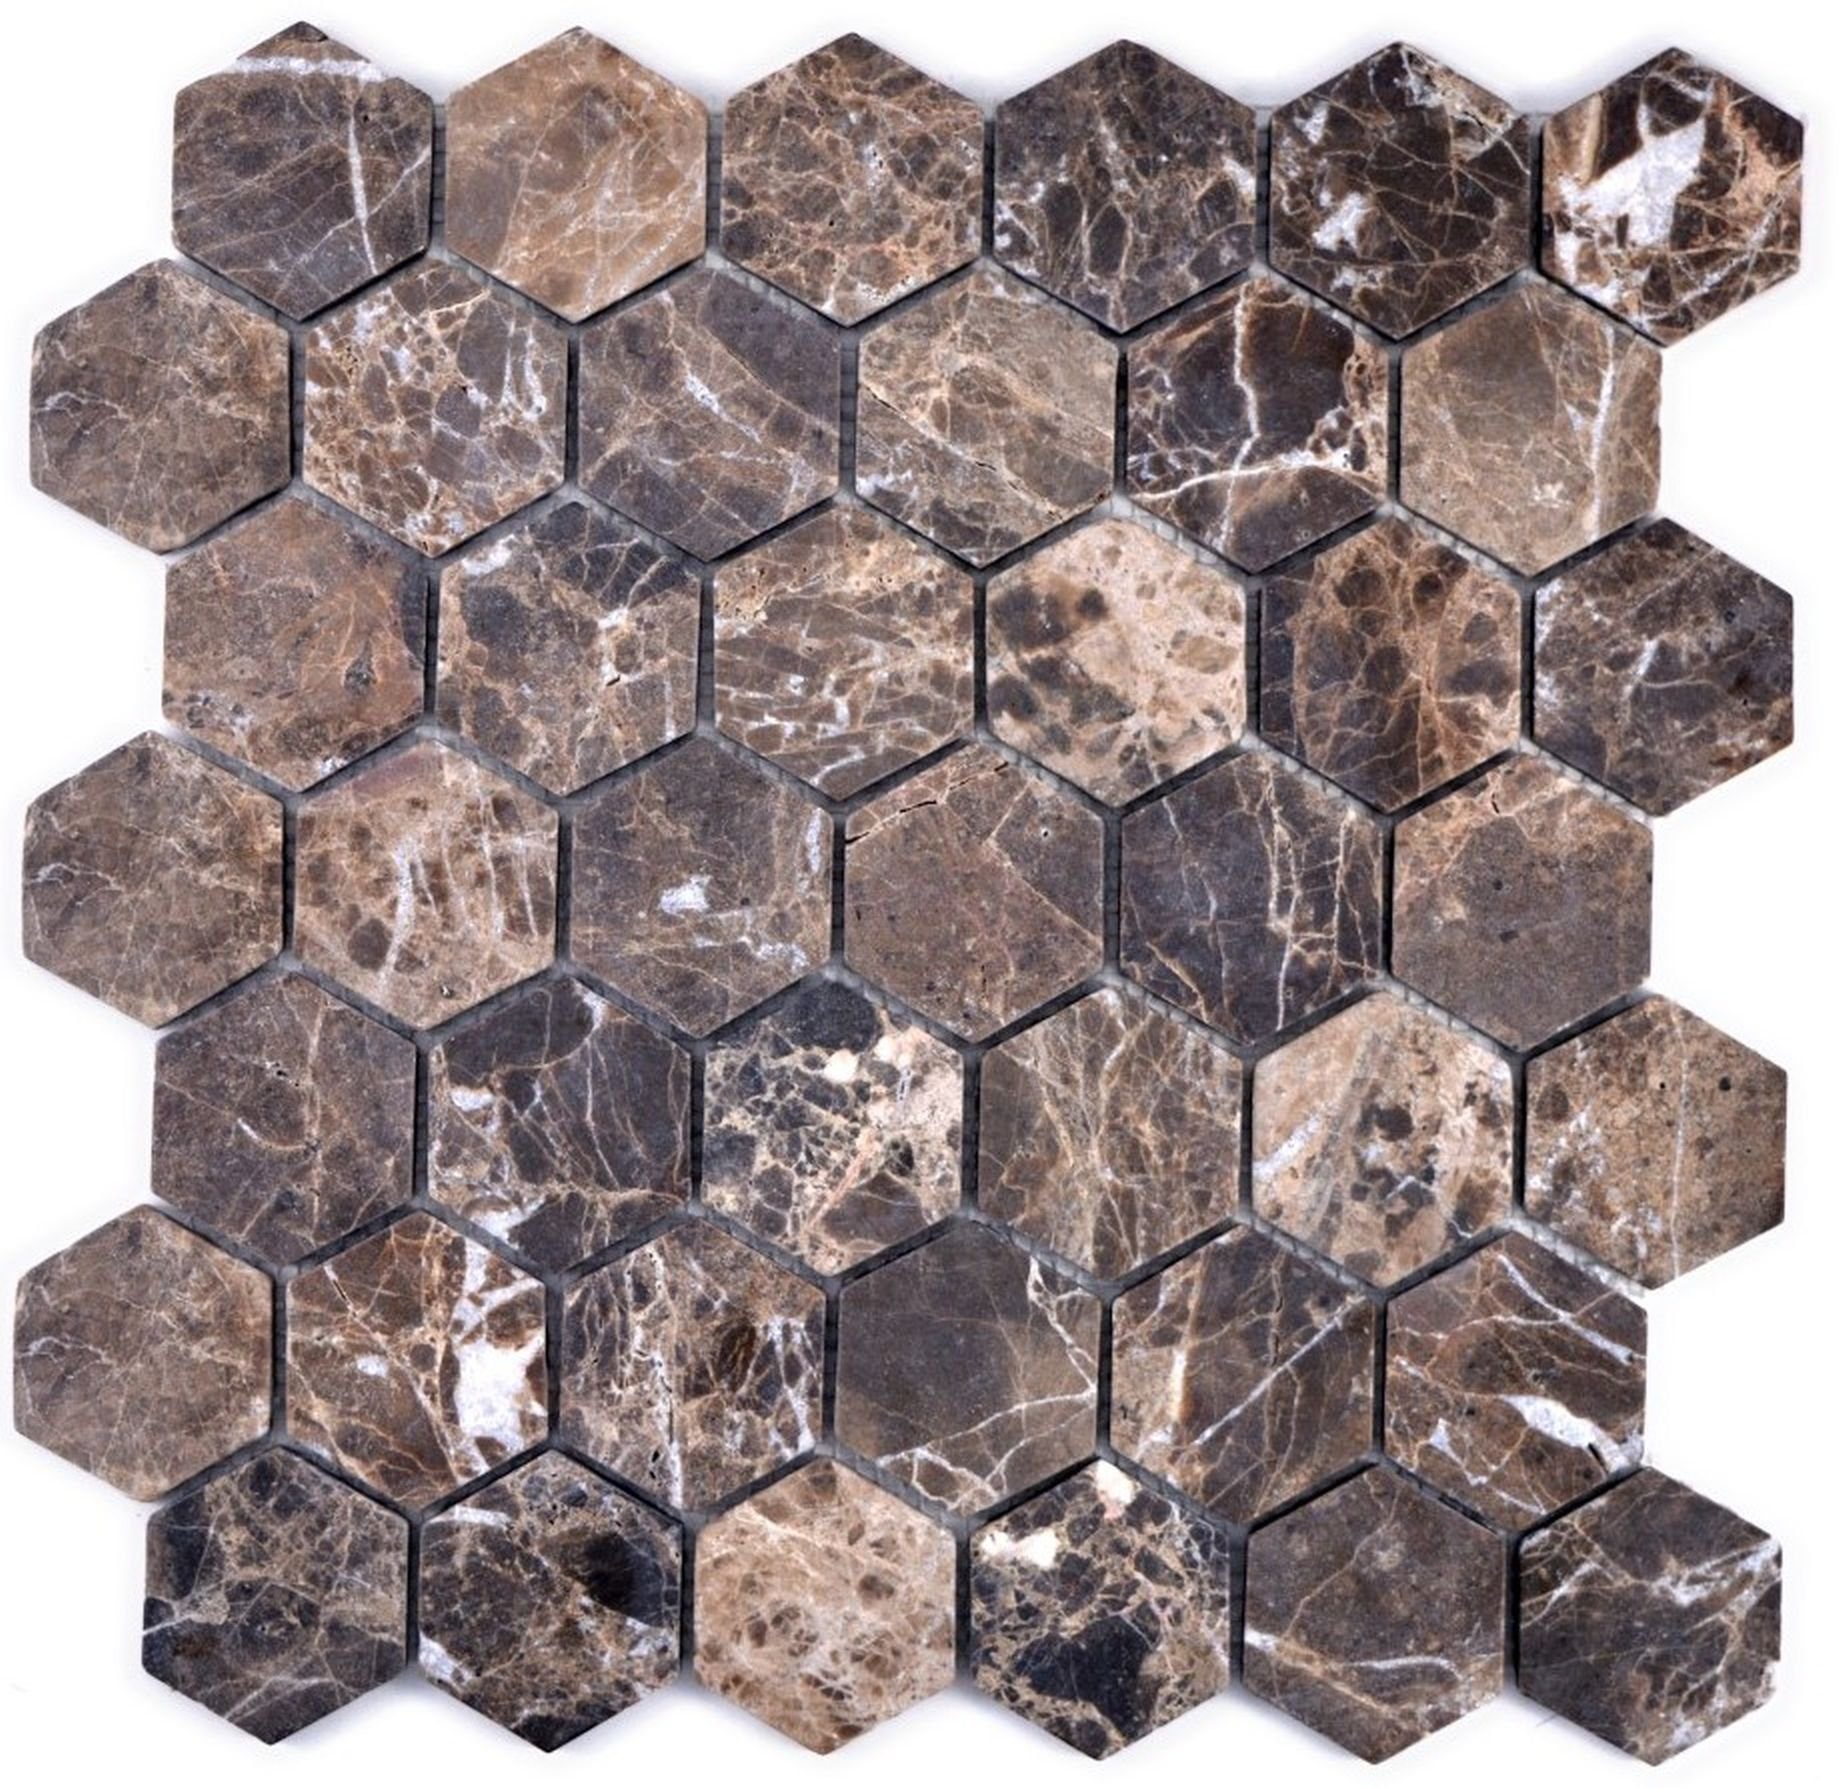 Mosani Mosaikfliesen Marmor geflammt mix Wand dunkelbraun Mosaik Fliese Dusche